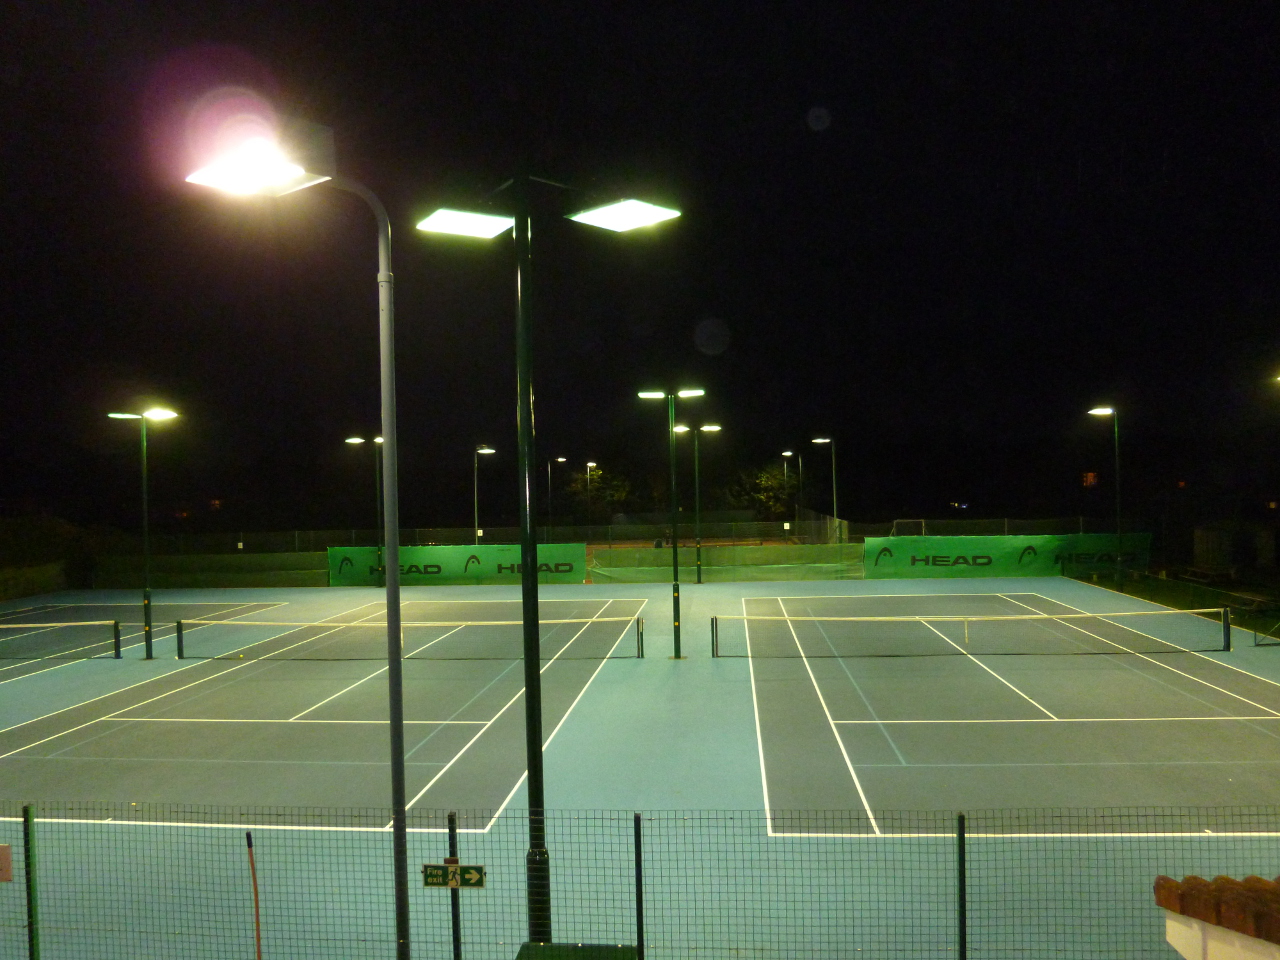 Bexley Lawn Tennis Club